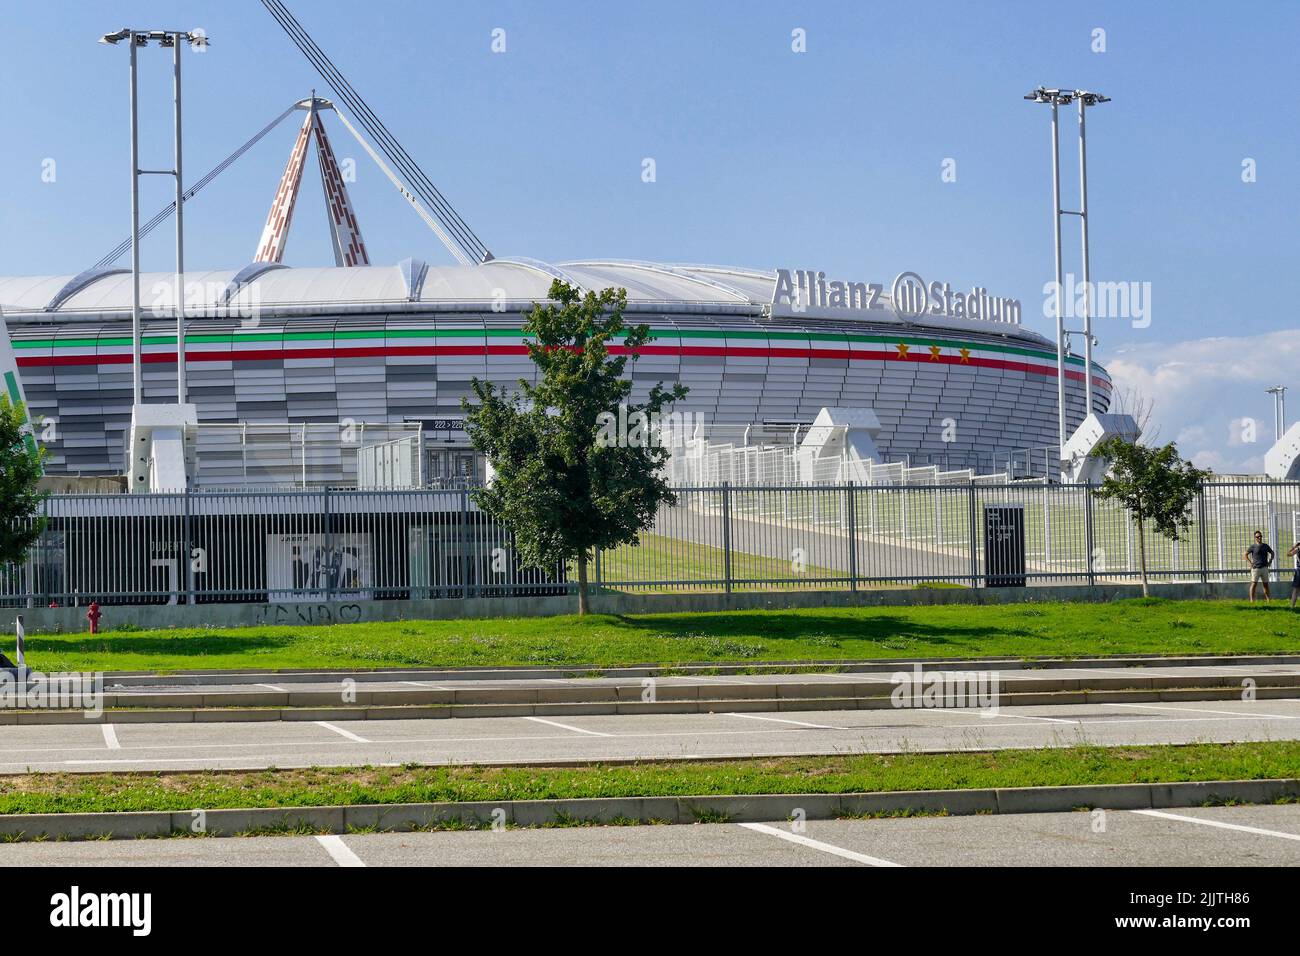 A beautiful shot of the Juventus football stadium Stock Photo